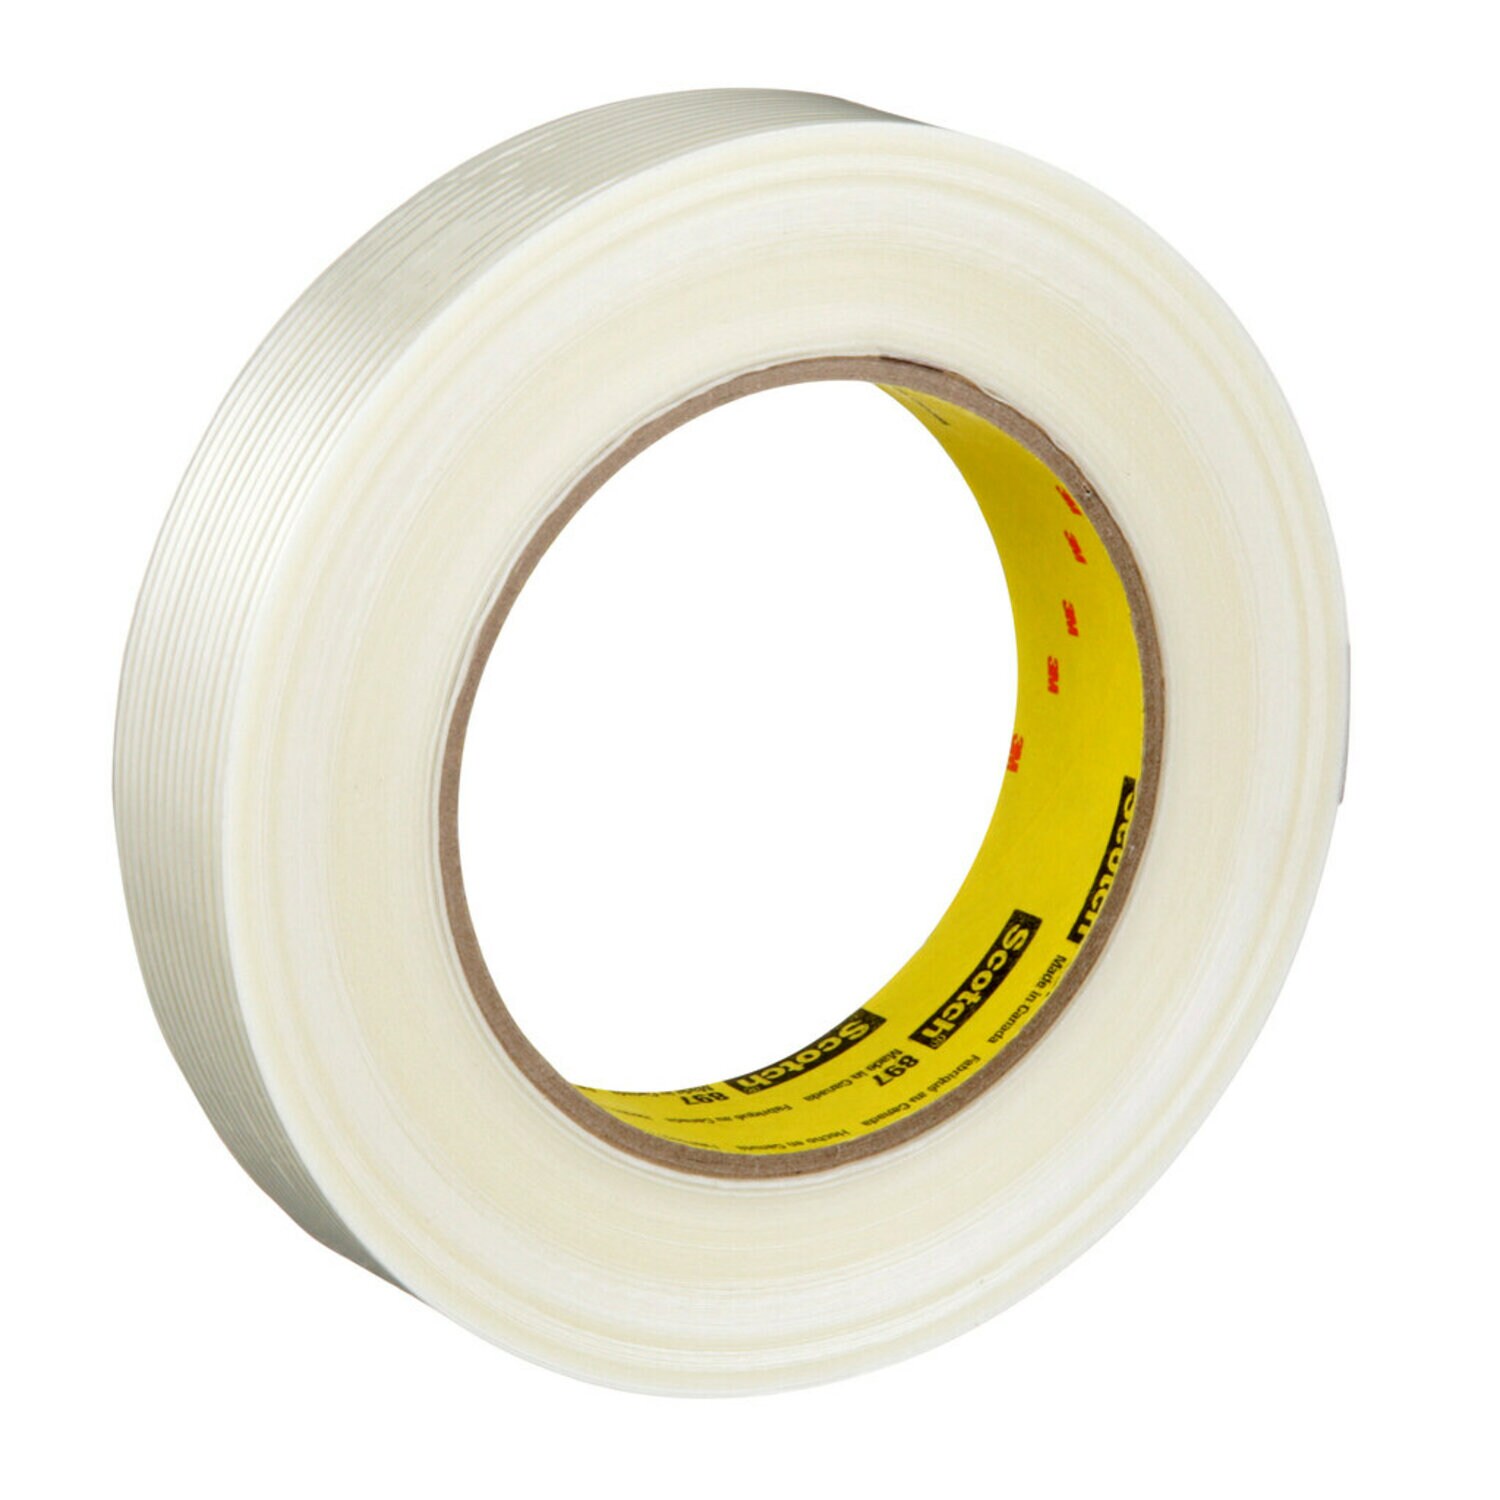 7000123442 - Scotch Filament Tape 897, Clear, 24 mm x 55 m, 5 mil, 36 rolls per case